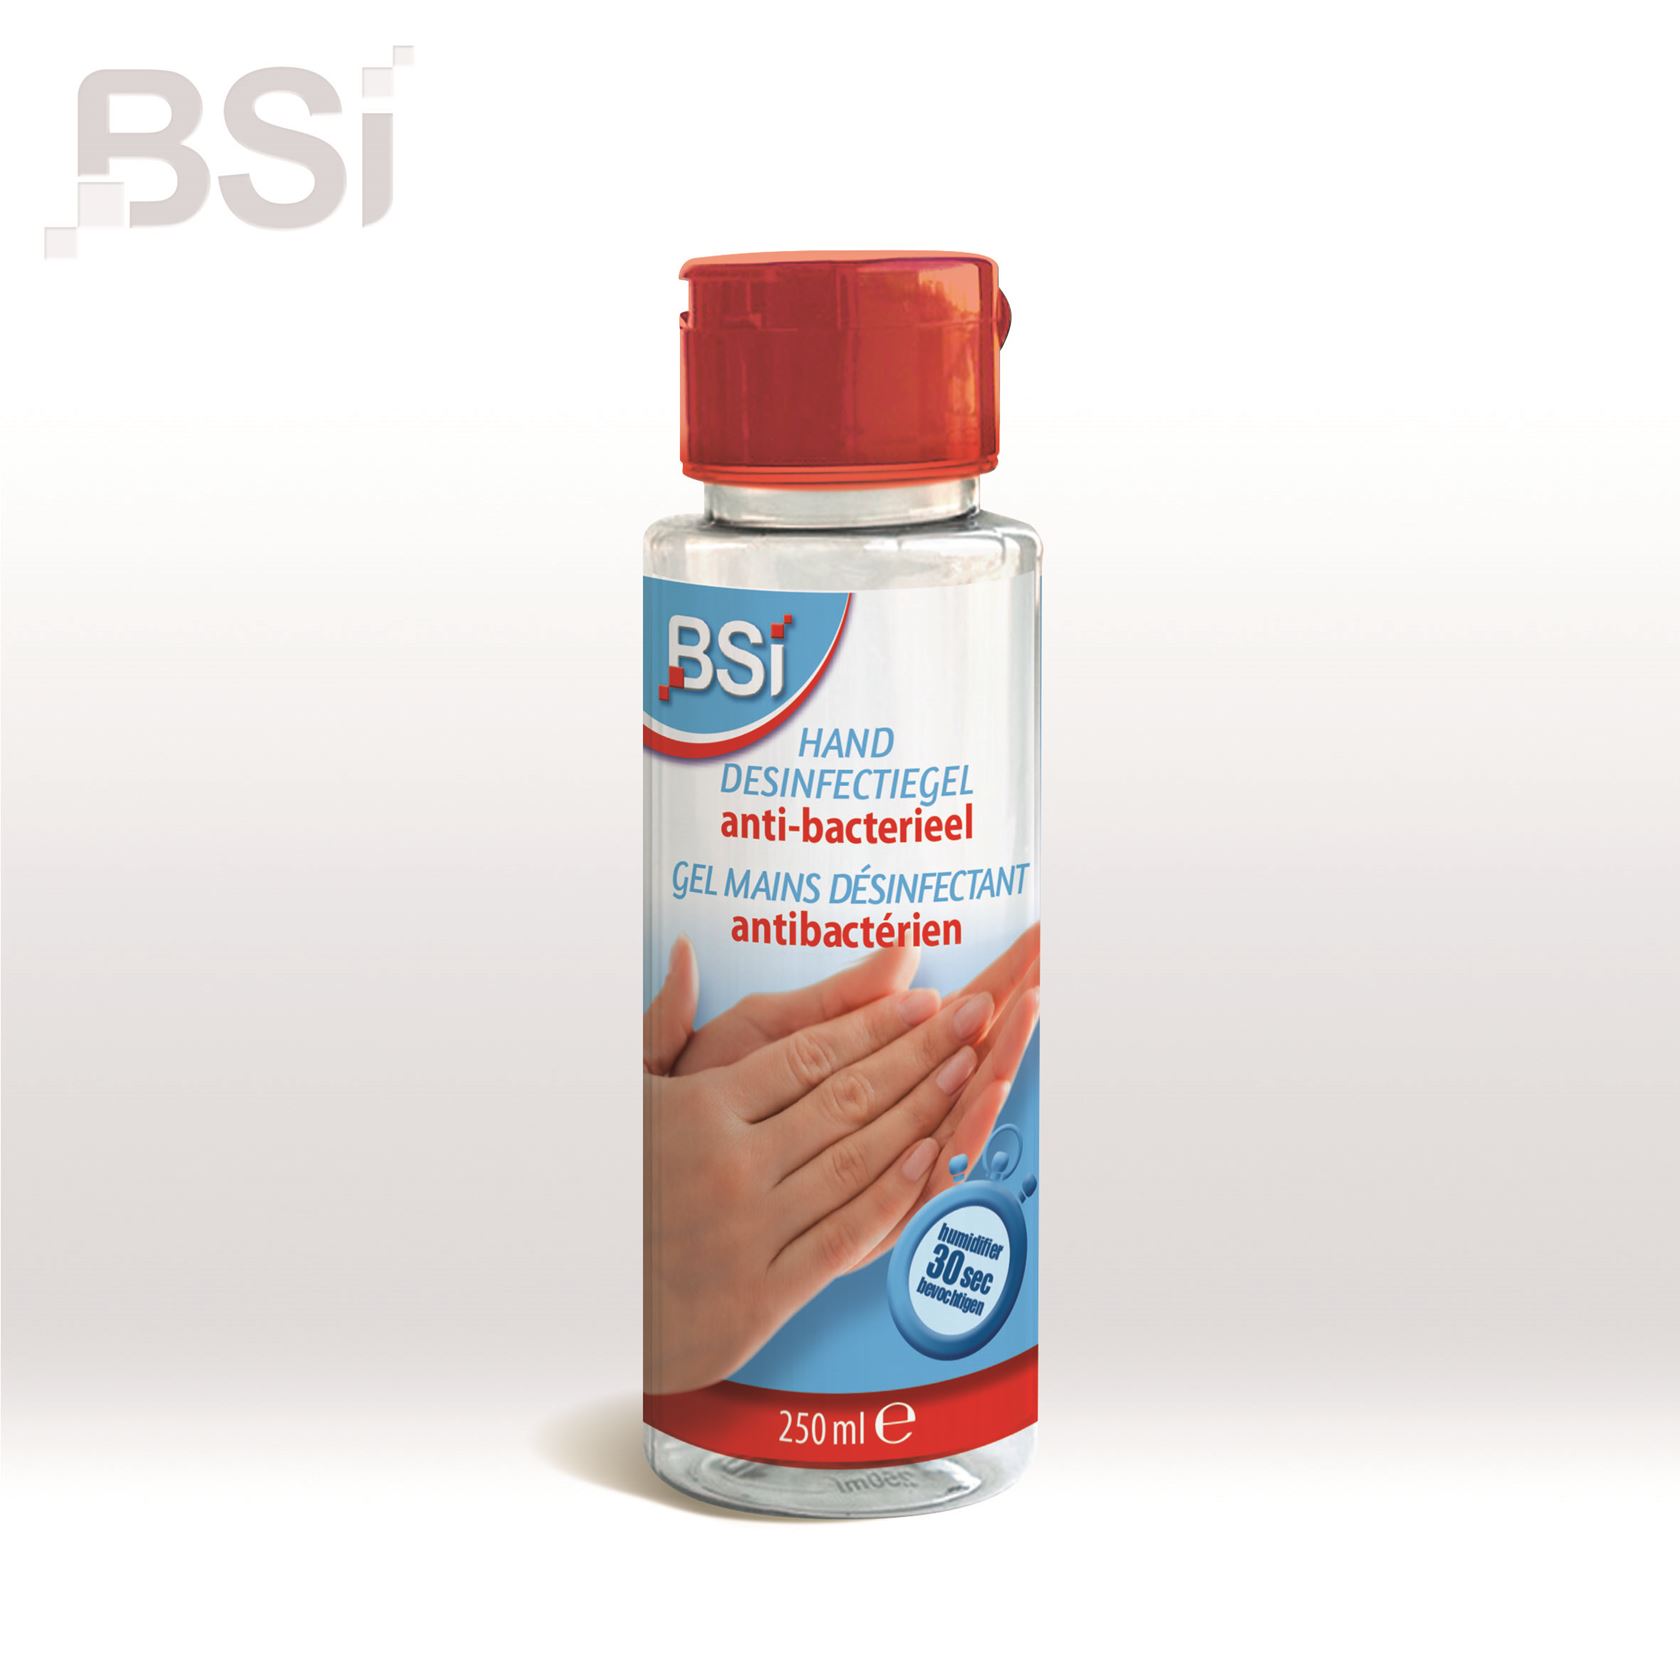 Handgel-desinfectiegel-250ml-BSI-gel-voor-handen-in-knijpfles-NOTIF809-